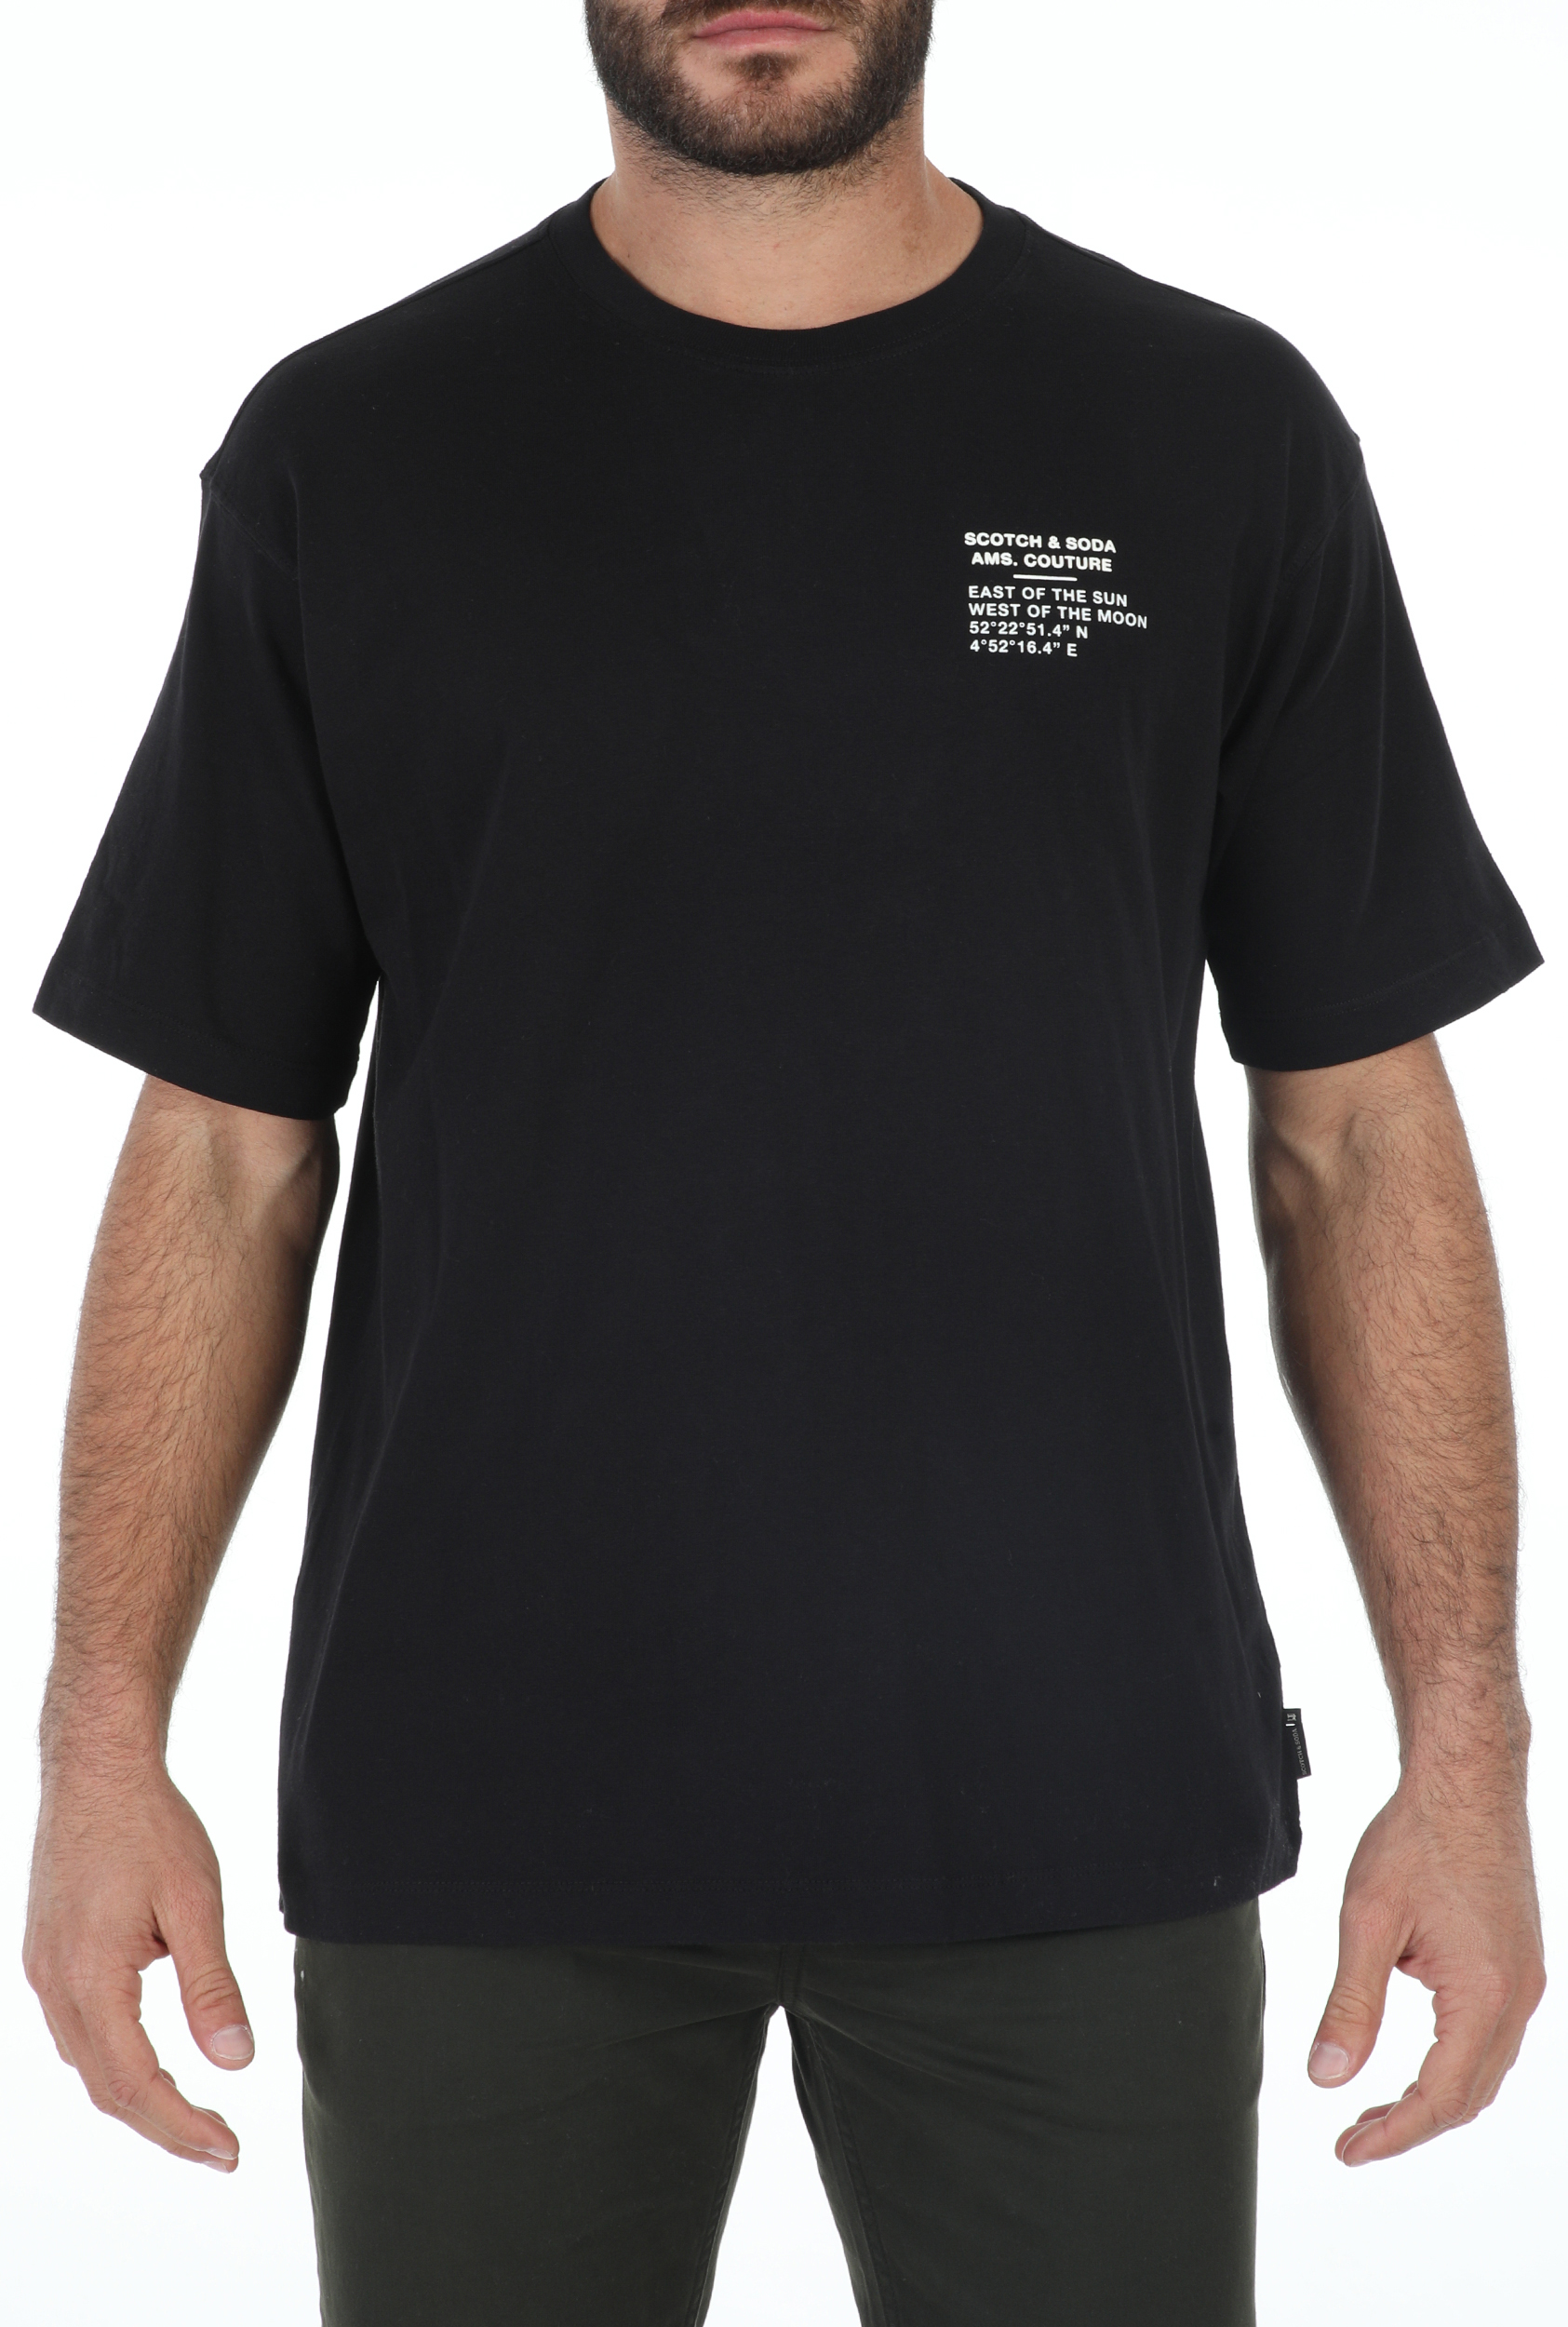 Ανδρικά/Ρούχα/Μπλούζες/Κοντομάνικες SCOTCH & SODA - Ανδρικό t-shirt SCOTCH & SODA Streetwear-inspired oversized μαύρο